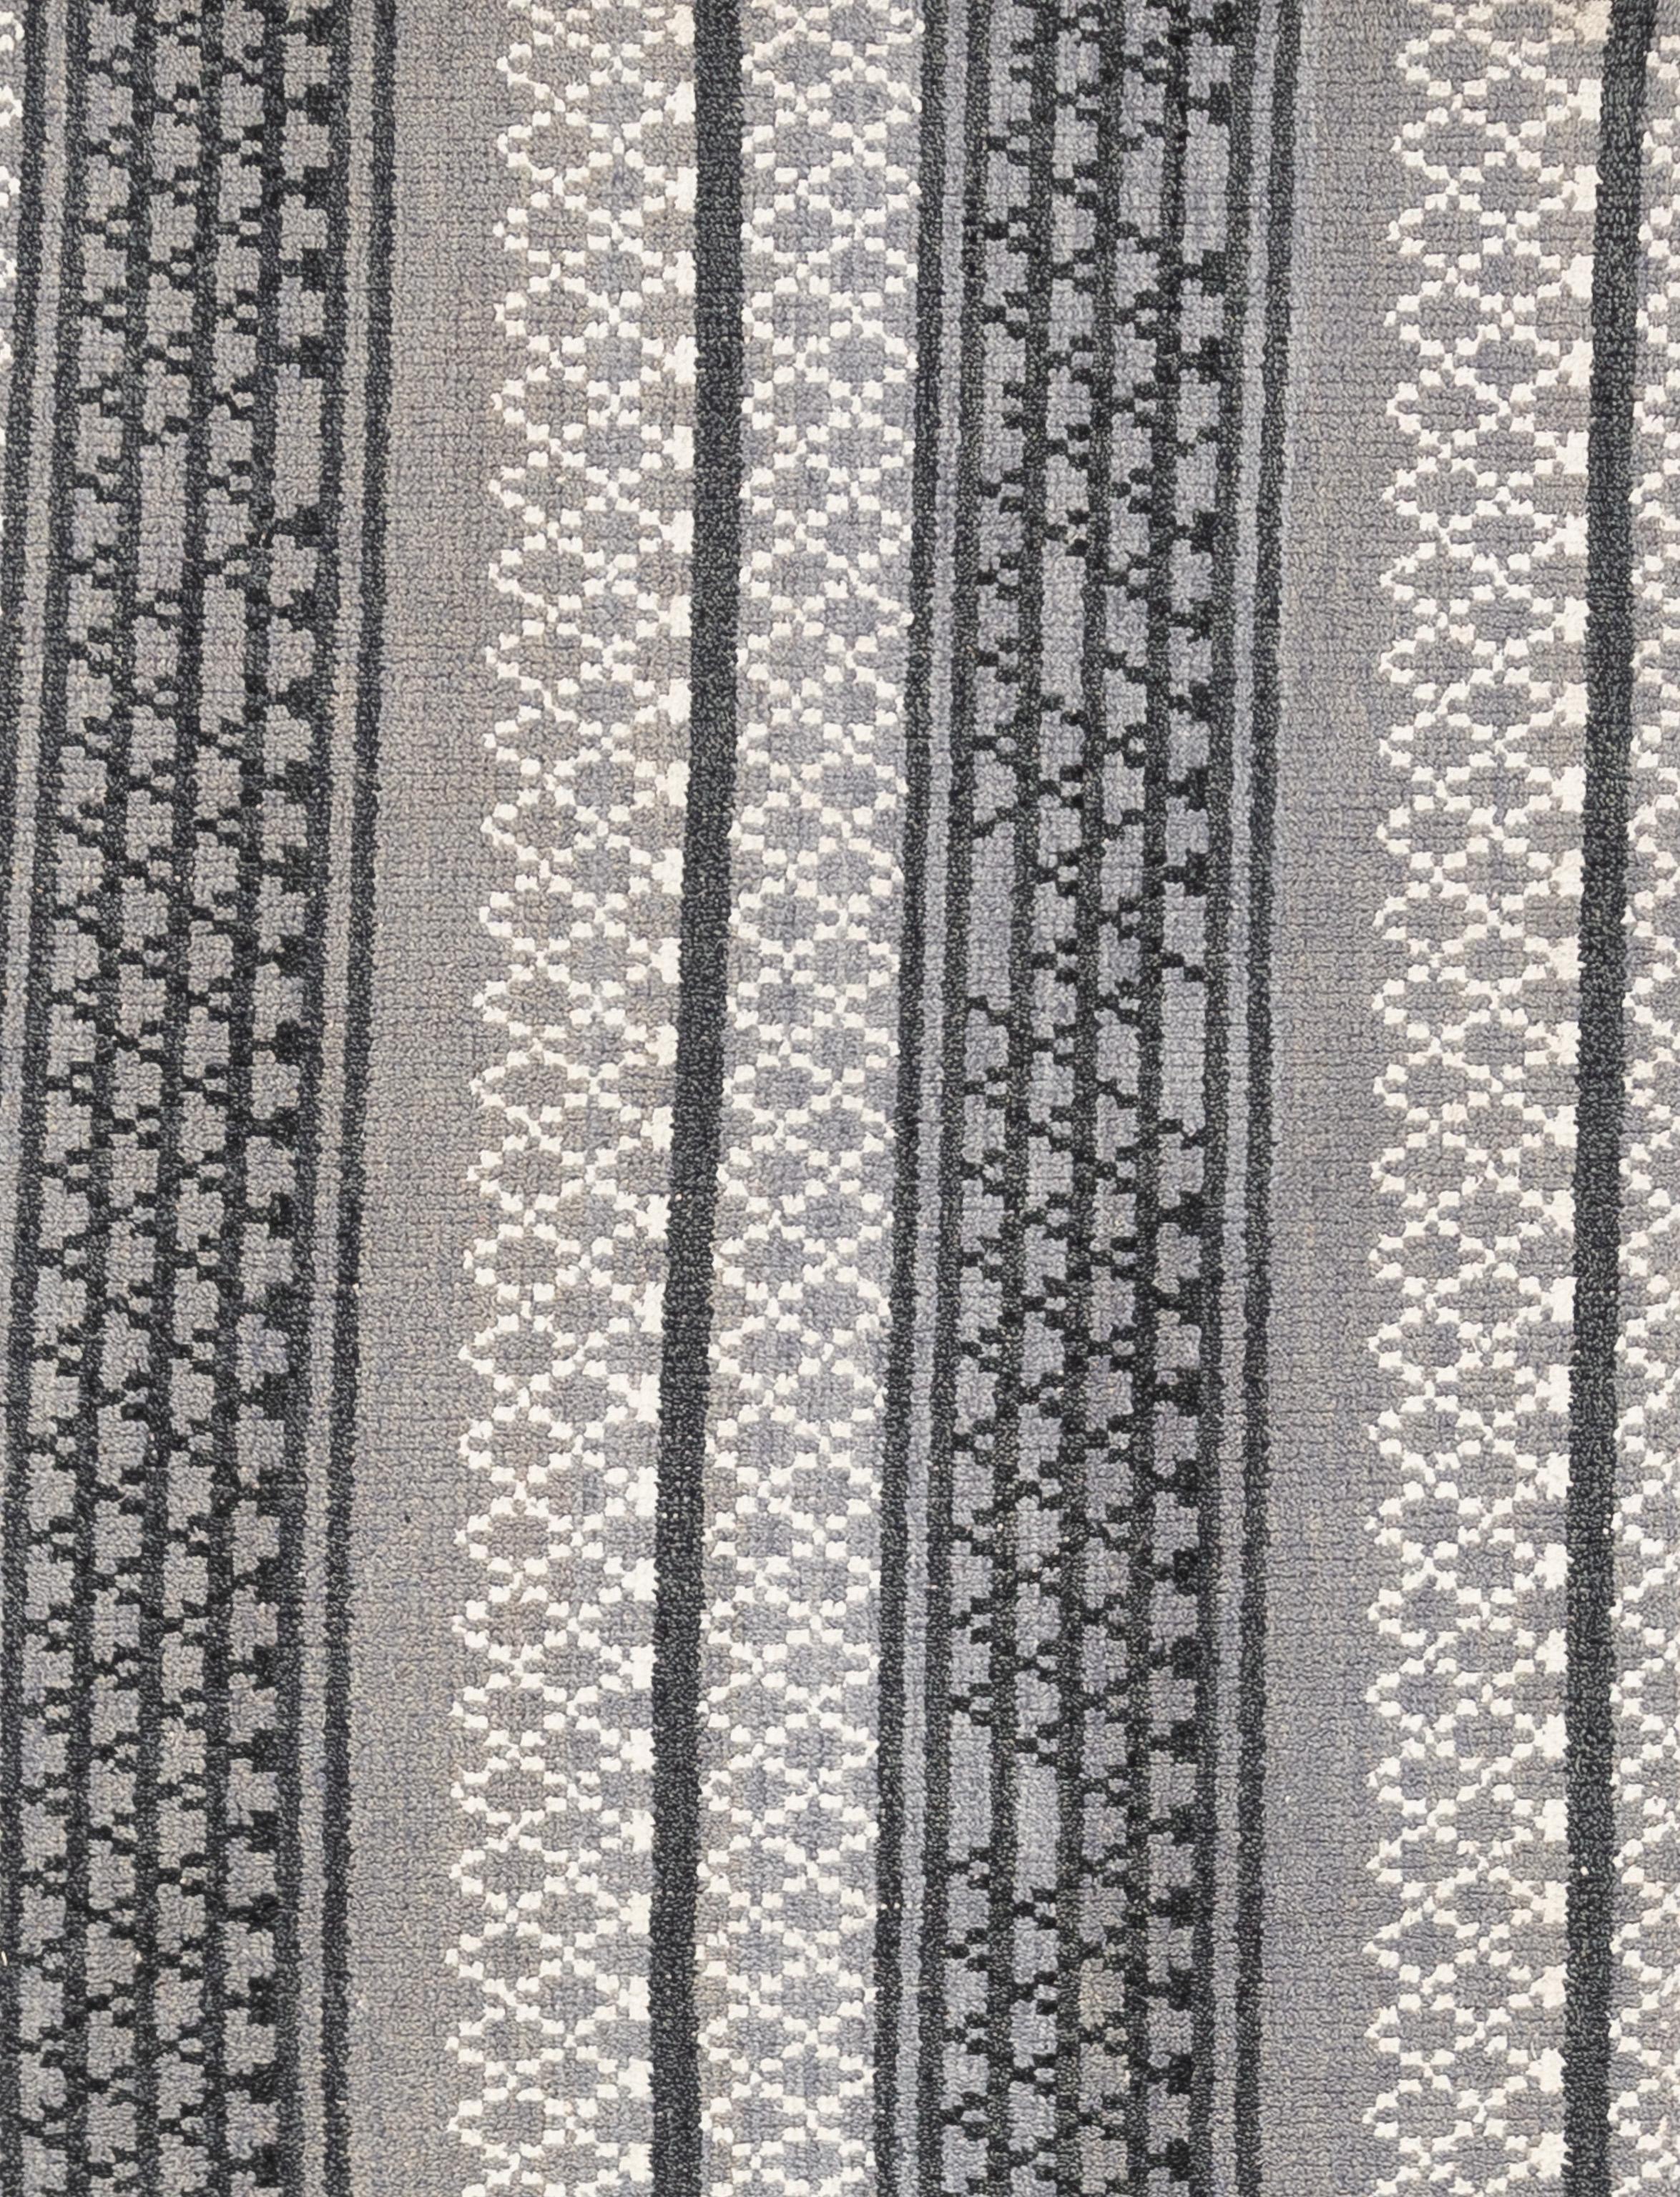 Dieses wunderschöne, handgewebte Tuch aus 100 % reiner, handgesponnener Wolle zeigt ein durchgehendes, geometrisches Stammesmuster in einer klaren Palette aus Grau, Elfenbein und Tiefblau. 

Größe - 8'2